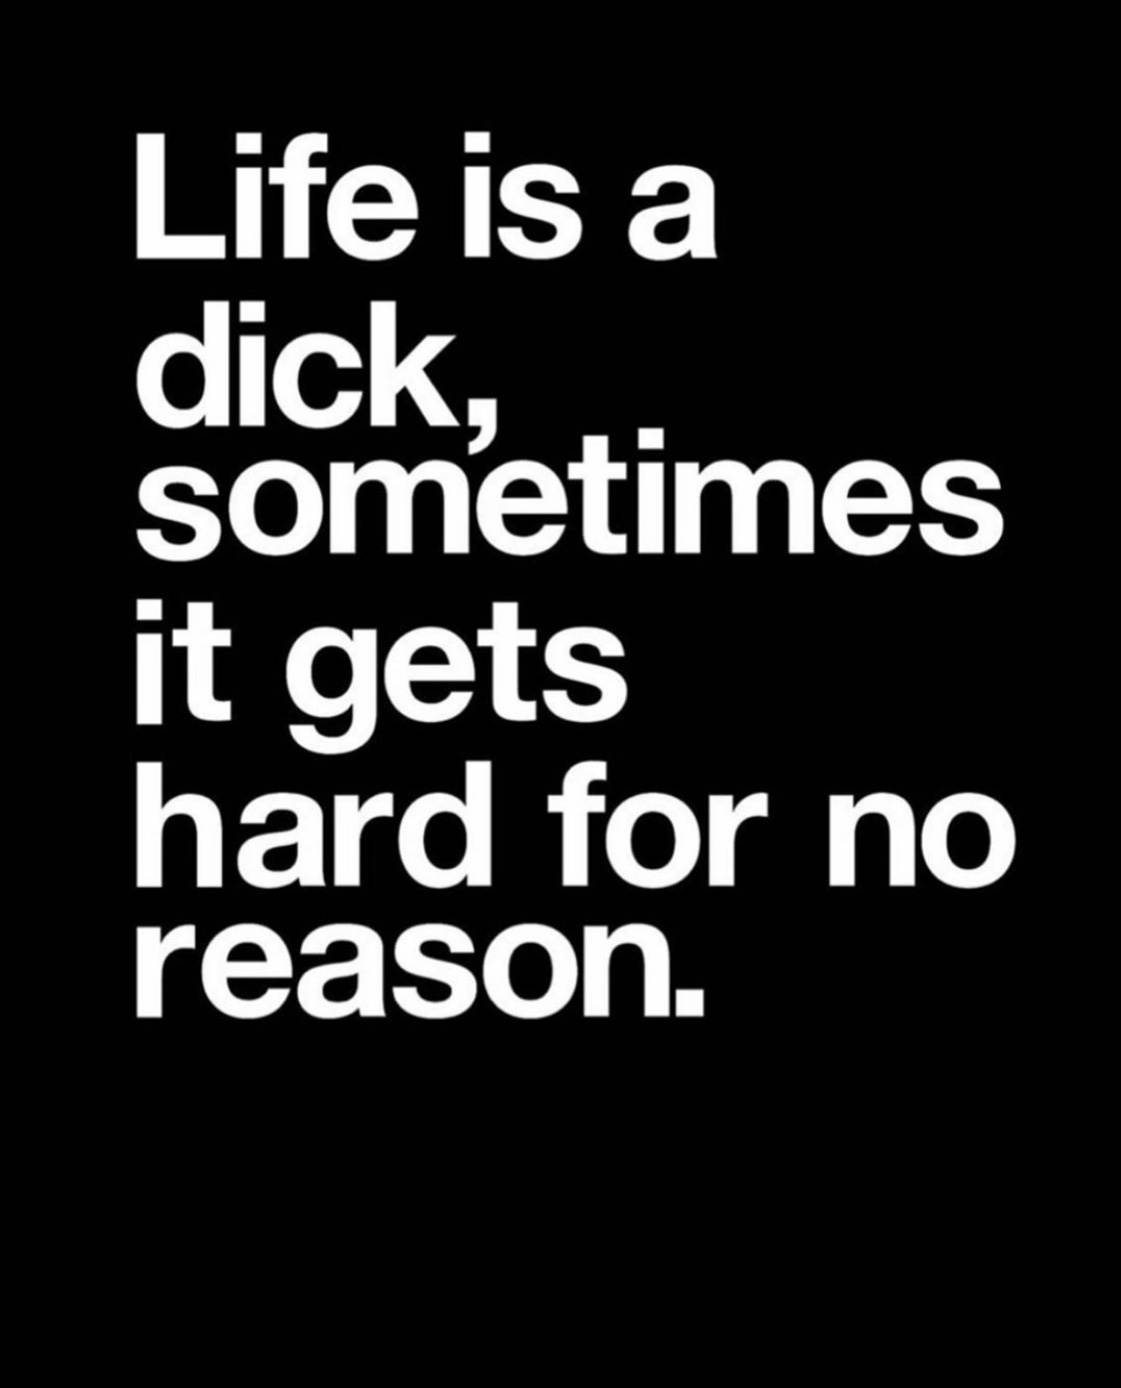 Life's like a dick